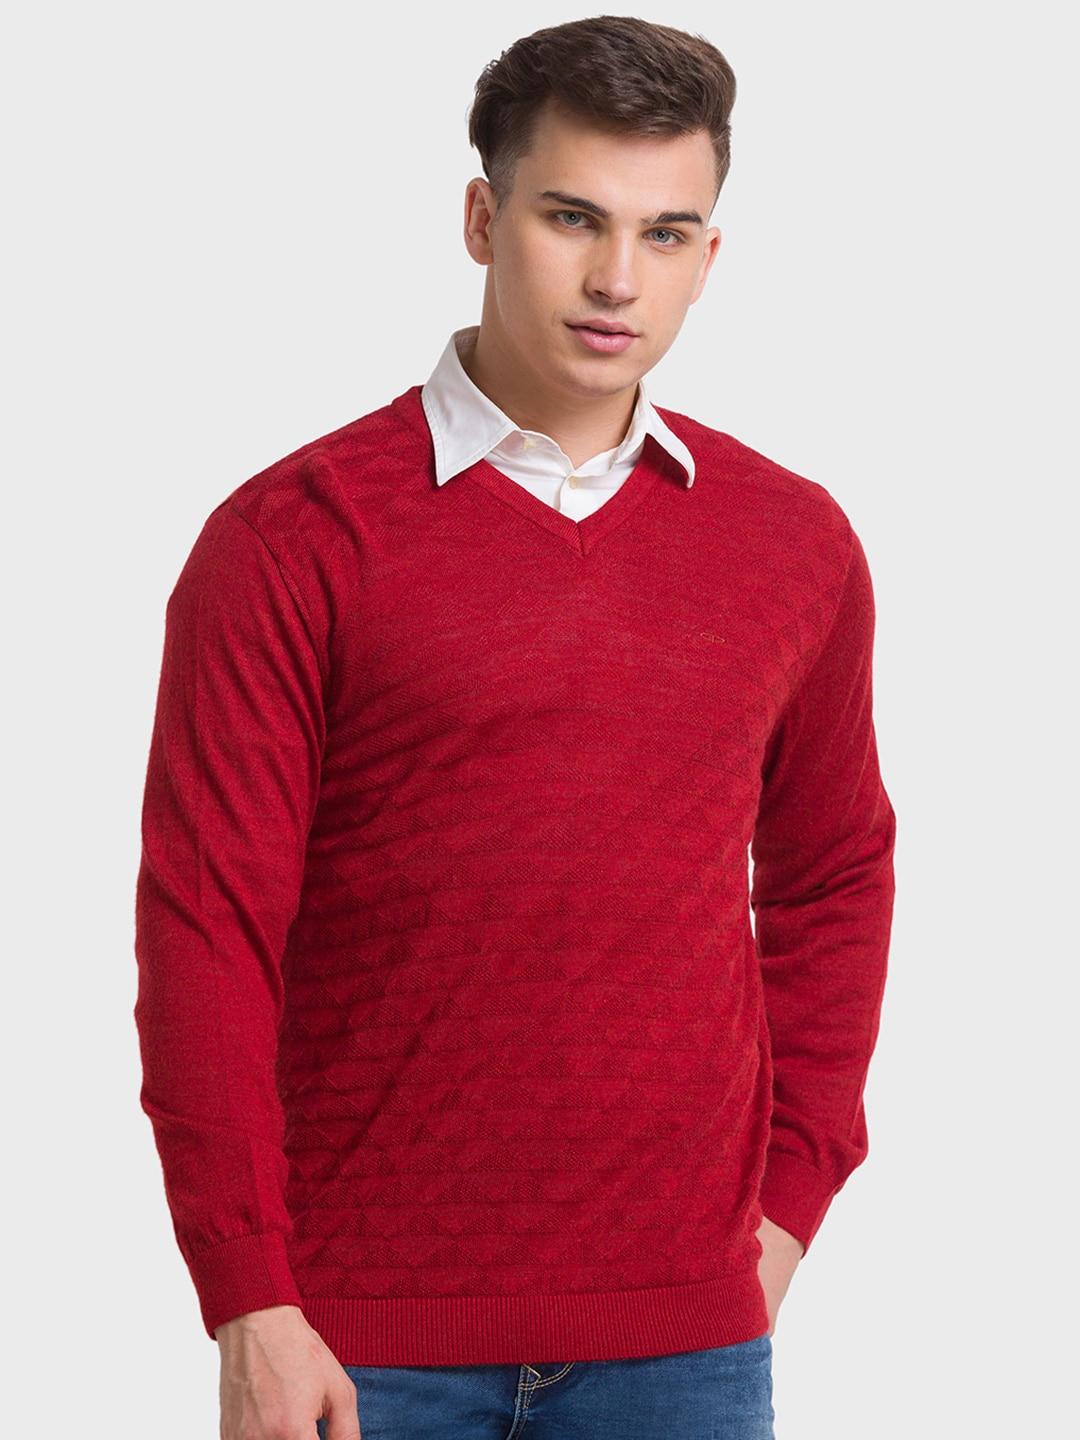 colorplus-men-v-neck-woolen-pullover